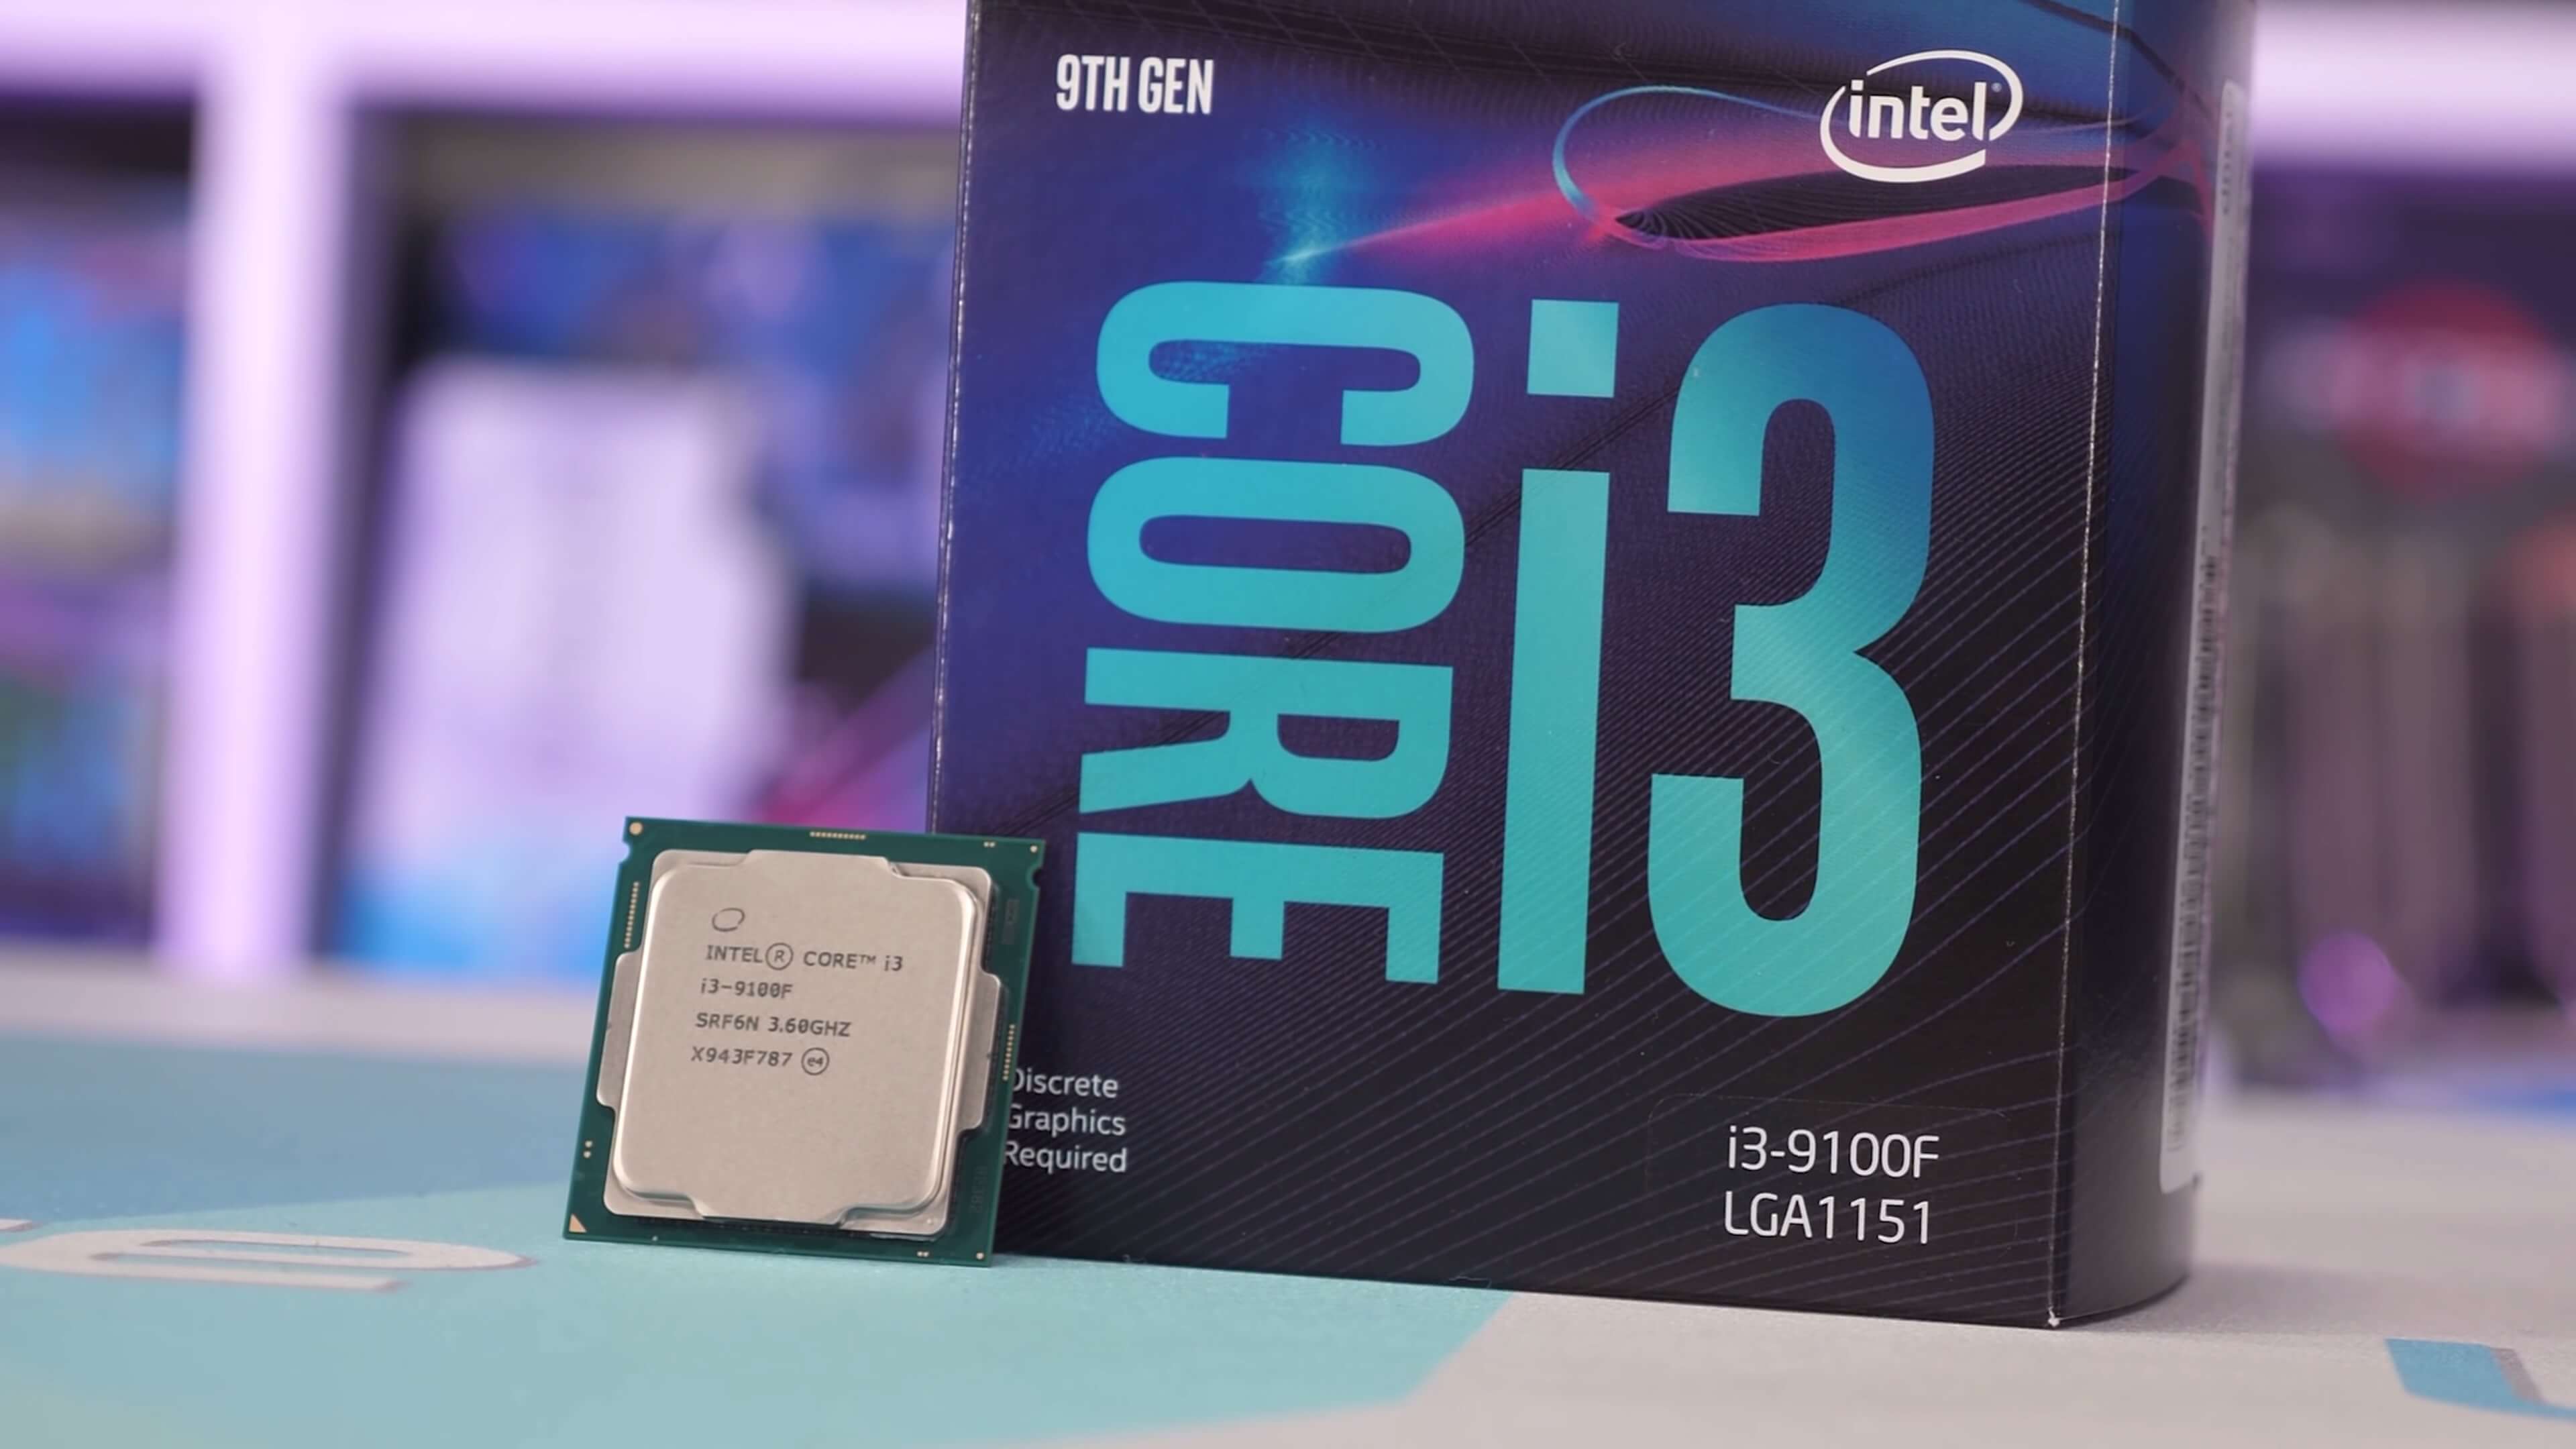 Intel Core i3-9100F vs. Ryzen 5 1600 AF